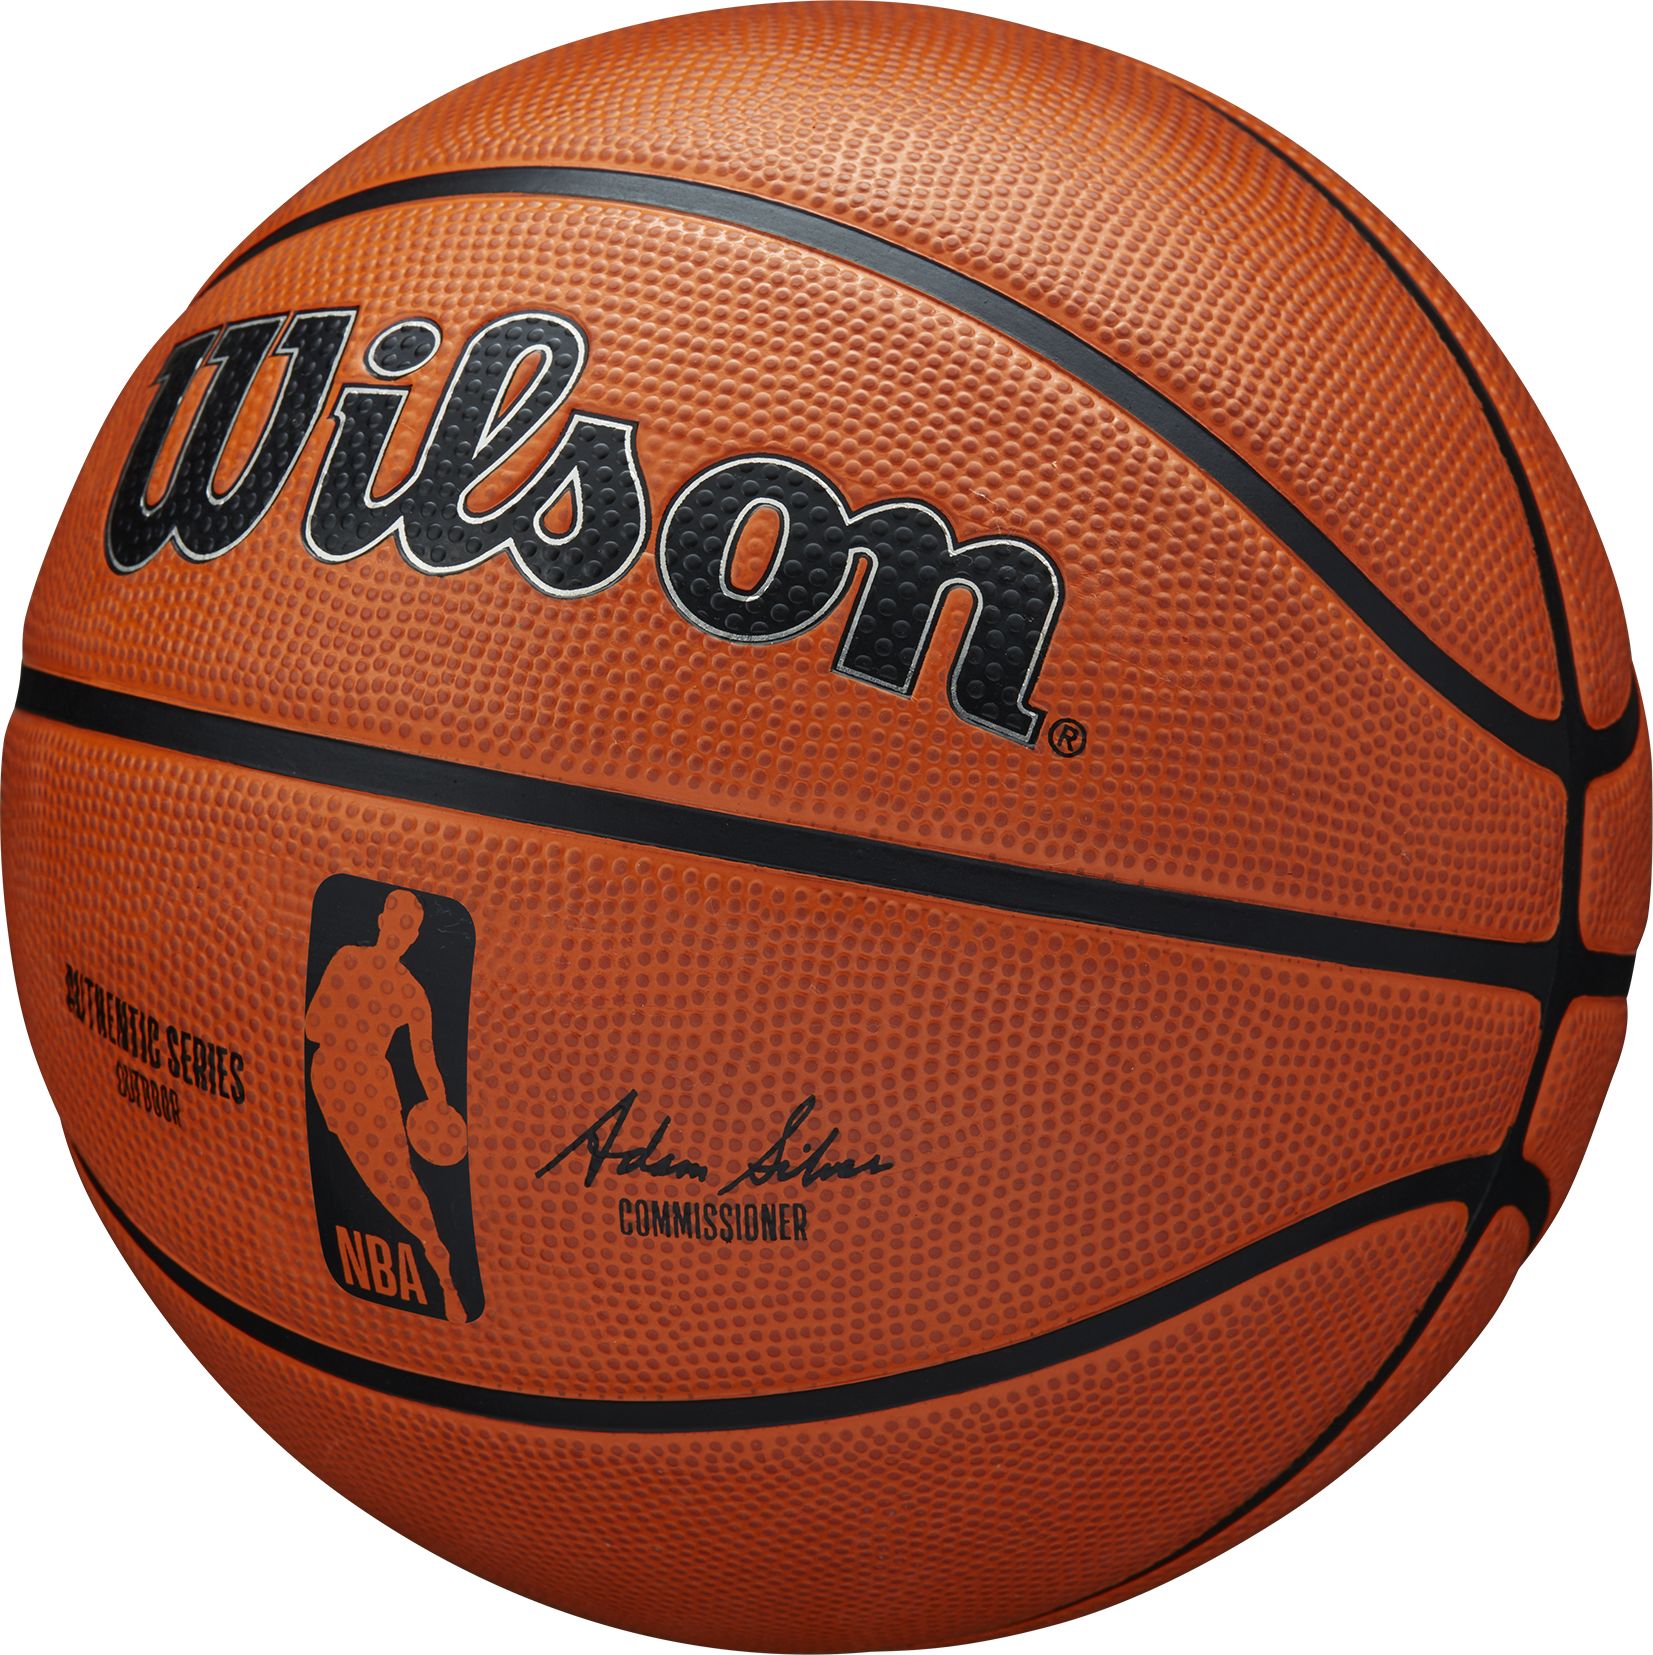 WILSON, NBA AUTHENTIC SERIES OUTDOOR BSKT